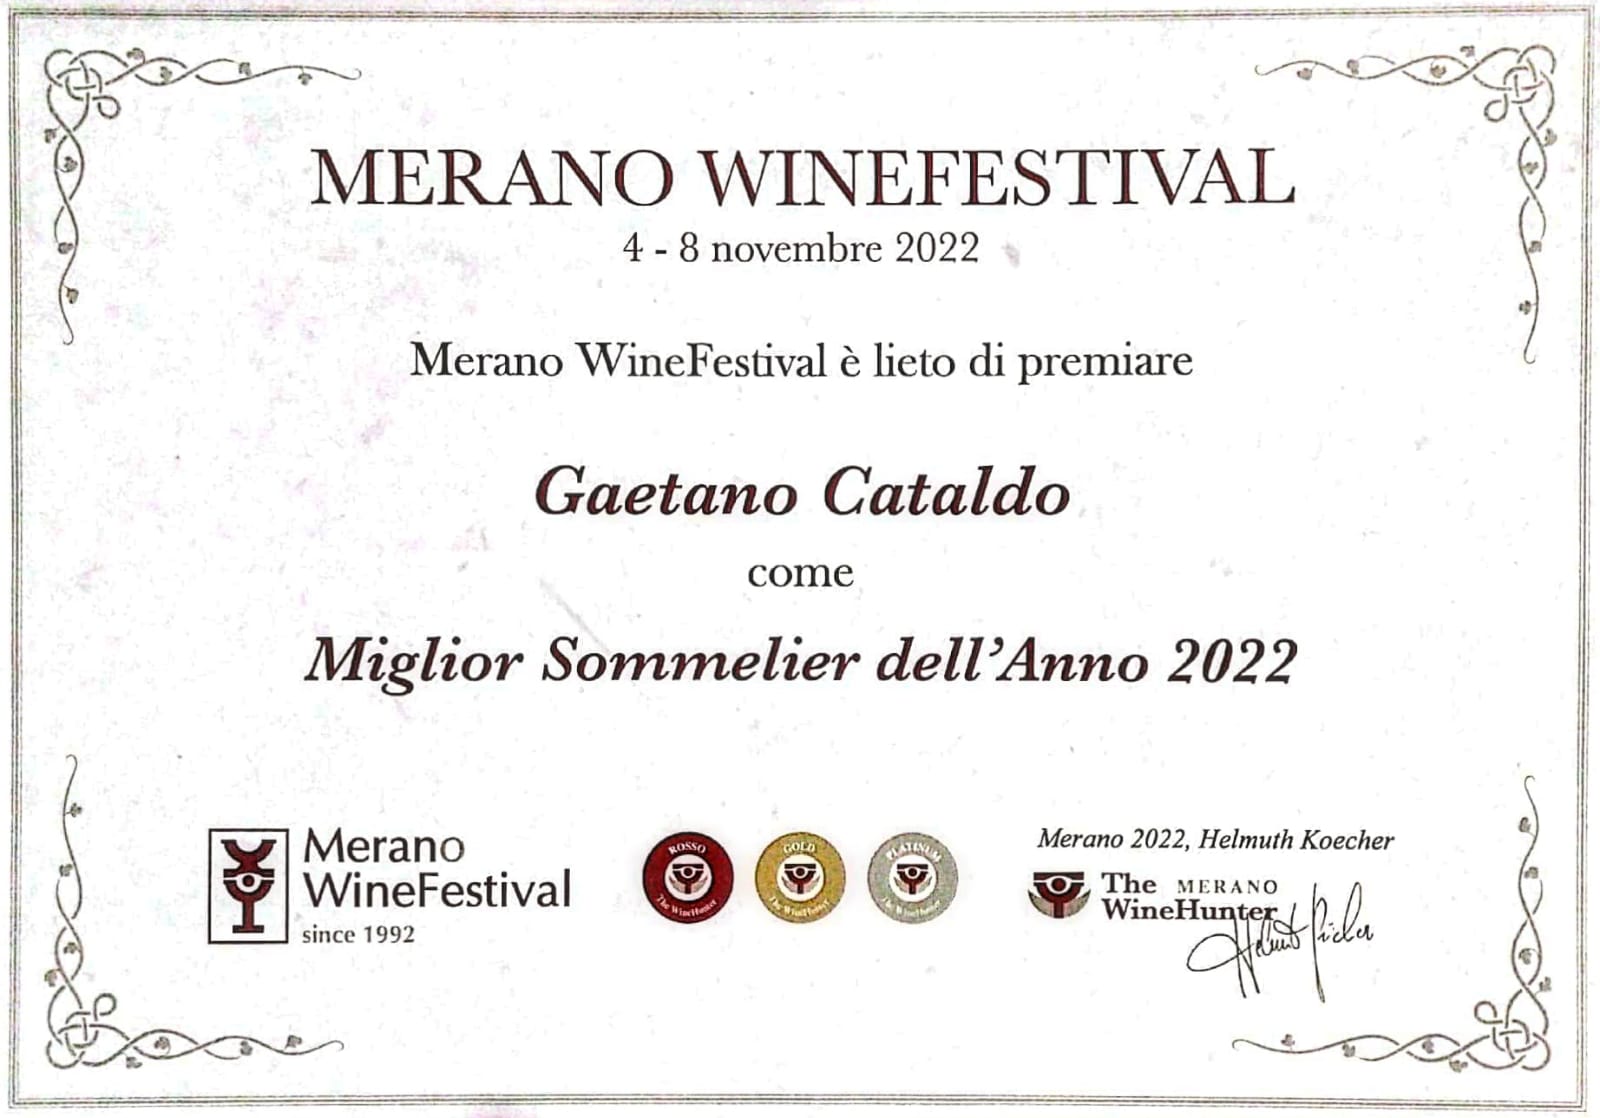 Gaetano Cataldo eletto Miglior Sommelier 2022 al Merano Wine Festival